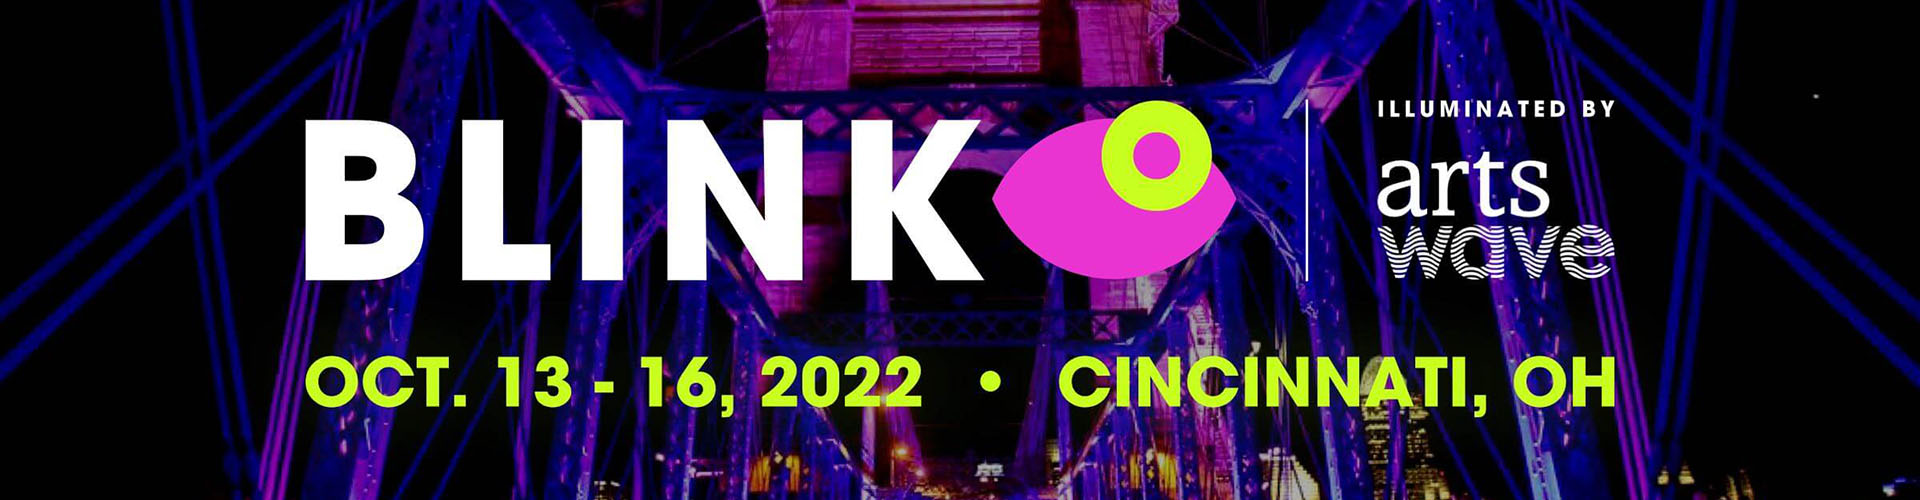 BLINK Cincinnati 2022 - ArtsWave Guide